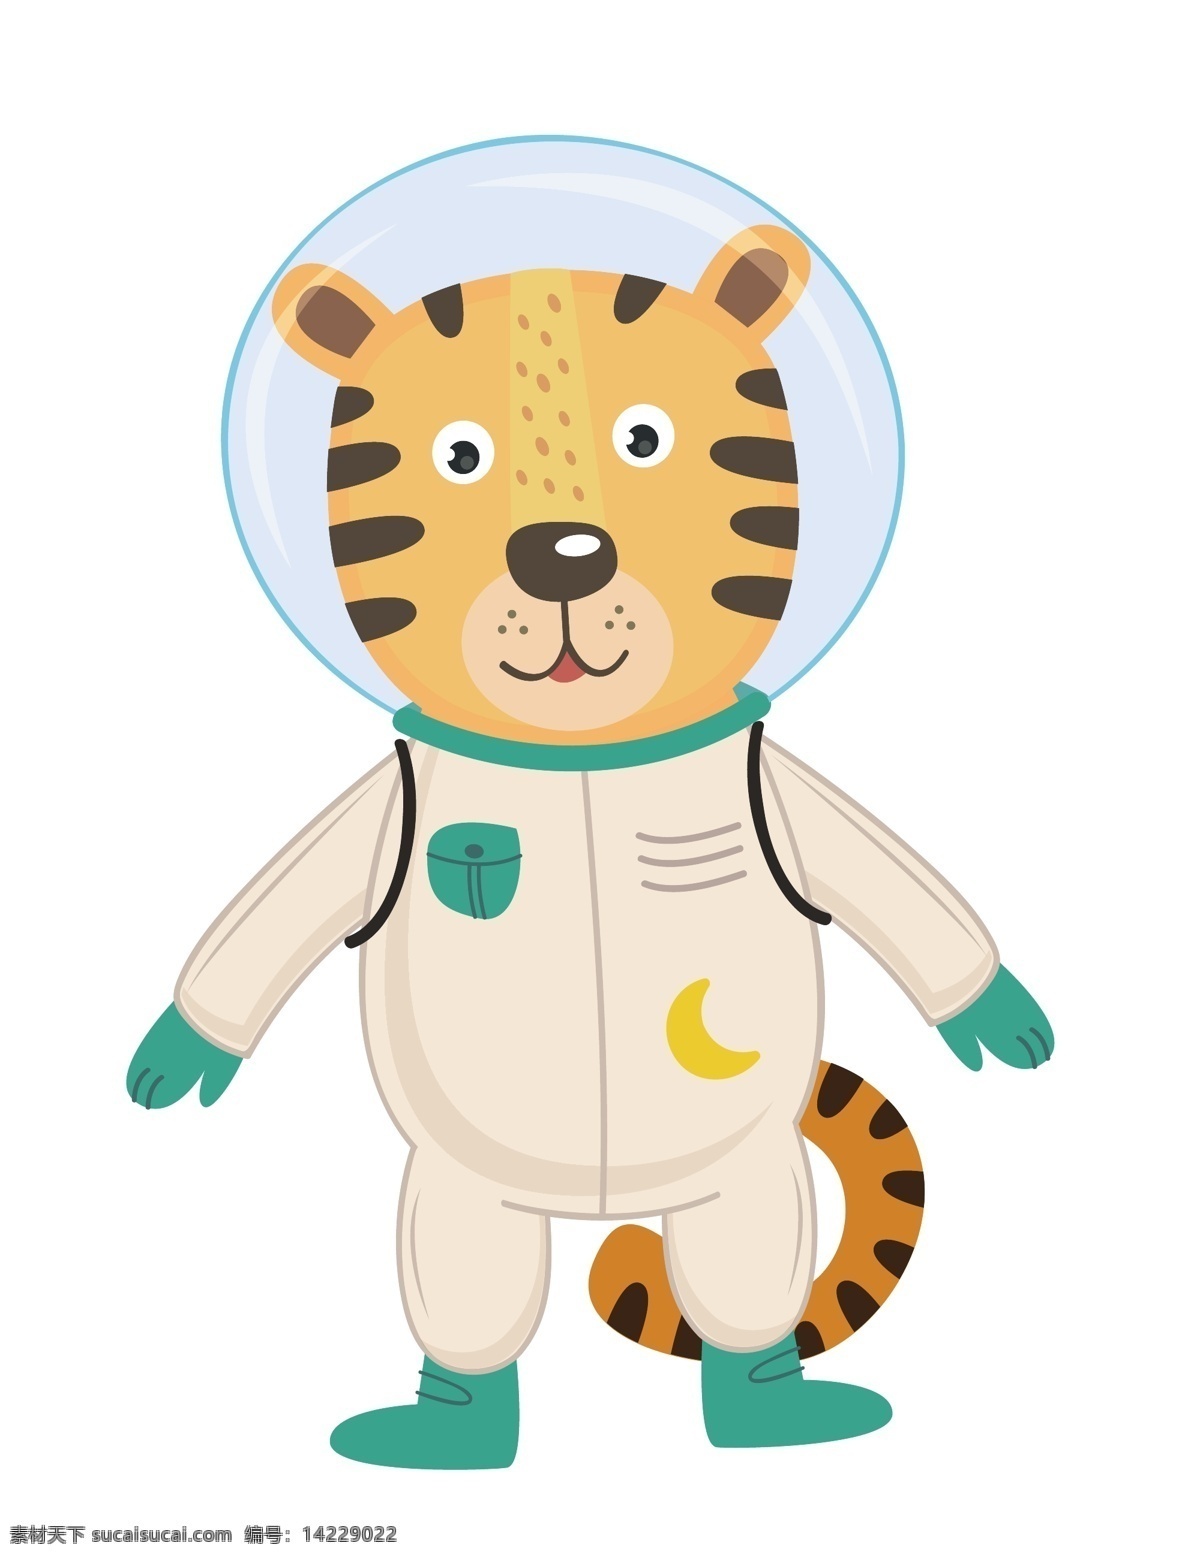 新 创意 卡通 动物 形象设计 小清新 动物设计 宇航员 可爱设计 形象 儿童画 动漫动画